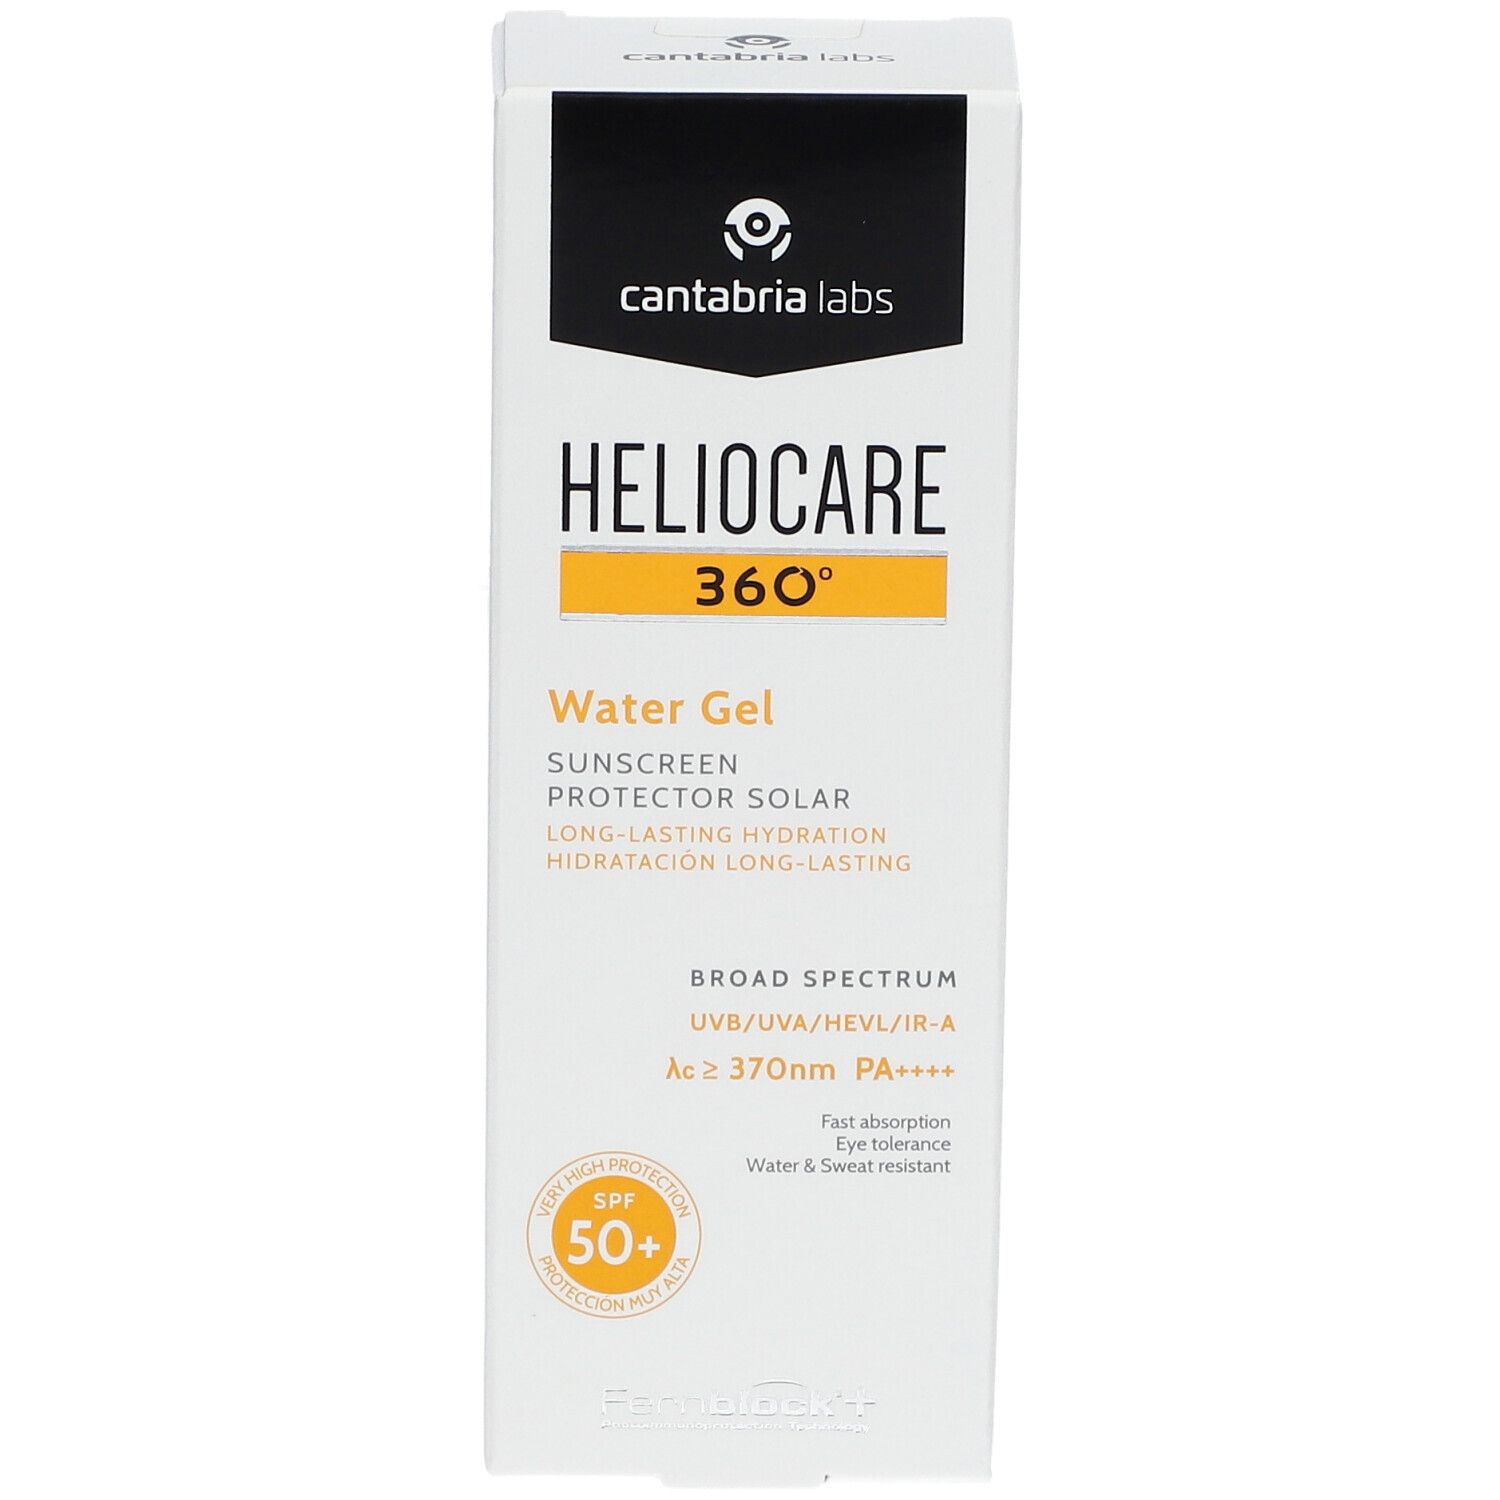 HELIOCARE® 360° Water Gel LSF 50+